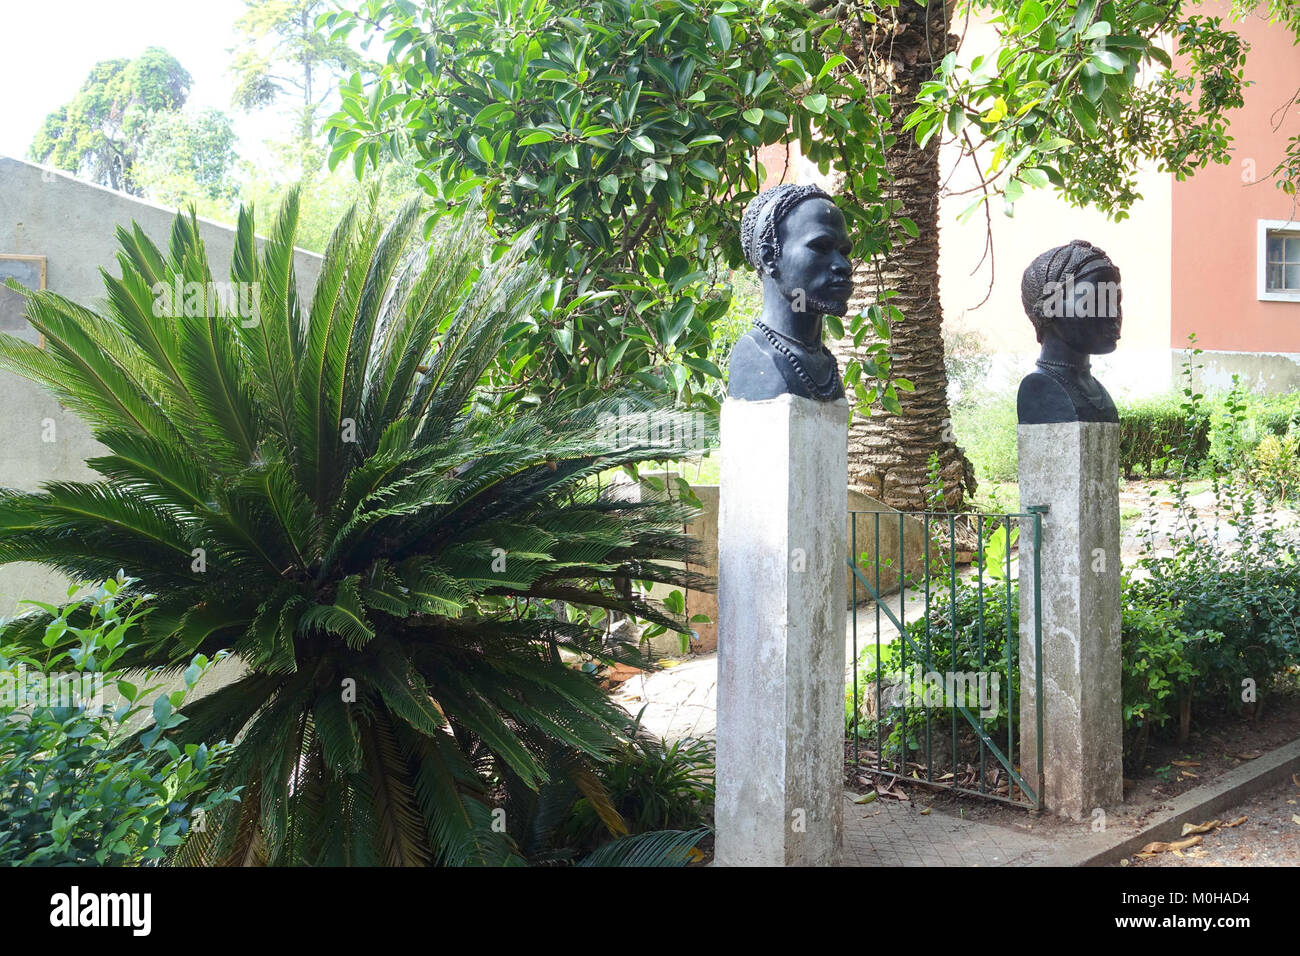 Busti di Manuel de Oliveira, dal Exposição do Mundo Português (1940 mostra del mondo portoghese) - Jardim Botânico tropicale - Lisbona, Portogallo - DSC06561 Foto Stock